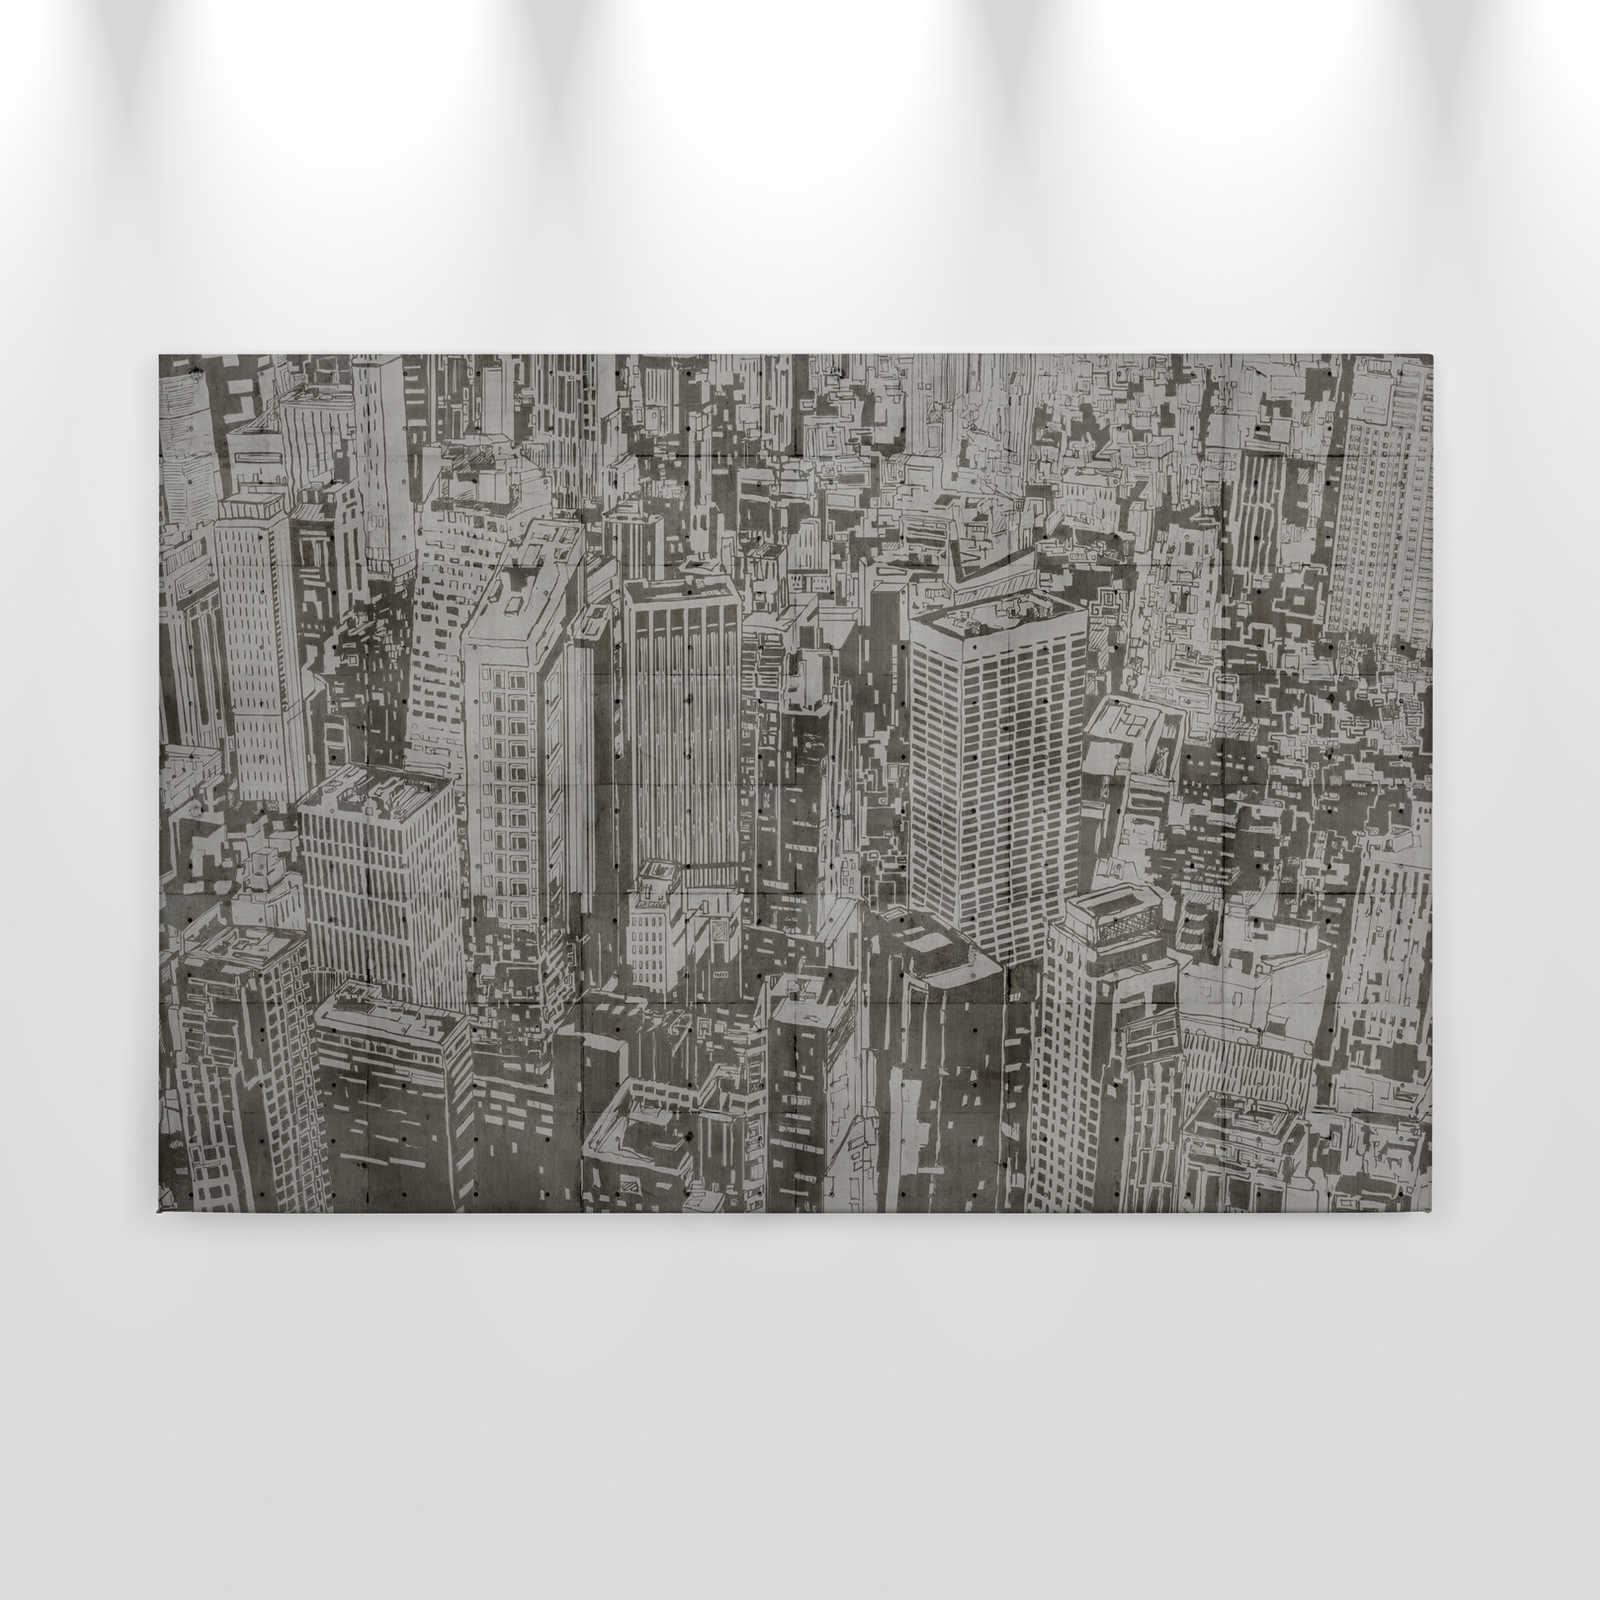             Downtown 2 - Estructura de hormigón Pintura sobre lienzo Aspecto Nueva York - 0,90 m x 0,60 m
        